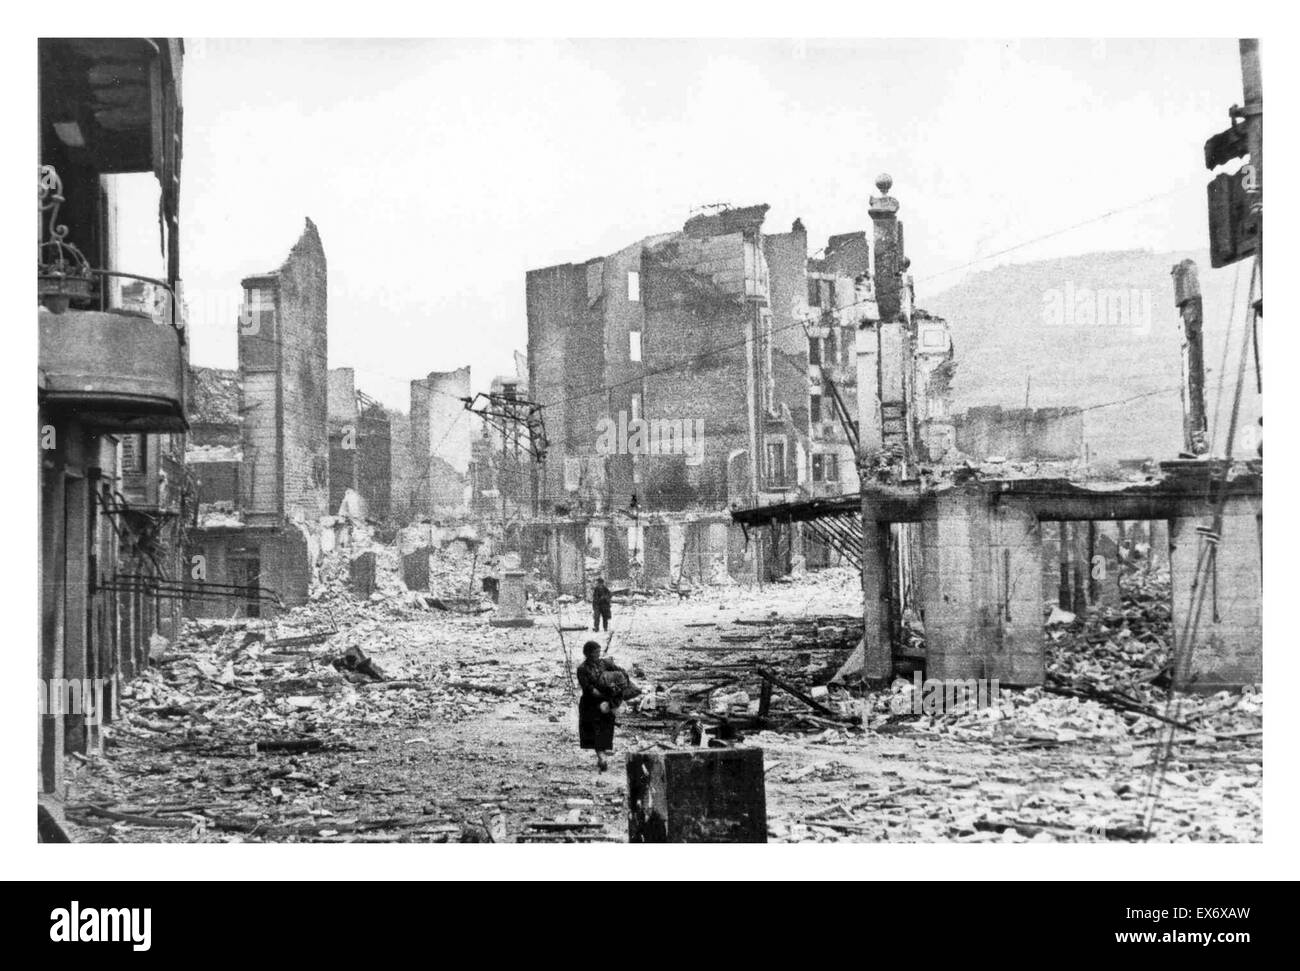 Spanischer Bürgerkrieg: die spanische Stadt Guernica, nach der Bombardierung durch deutsche und italienische Flugzeuge 1937. Stockfoto